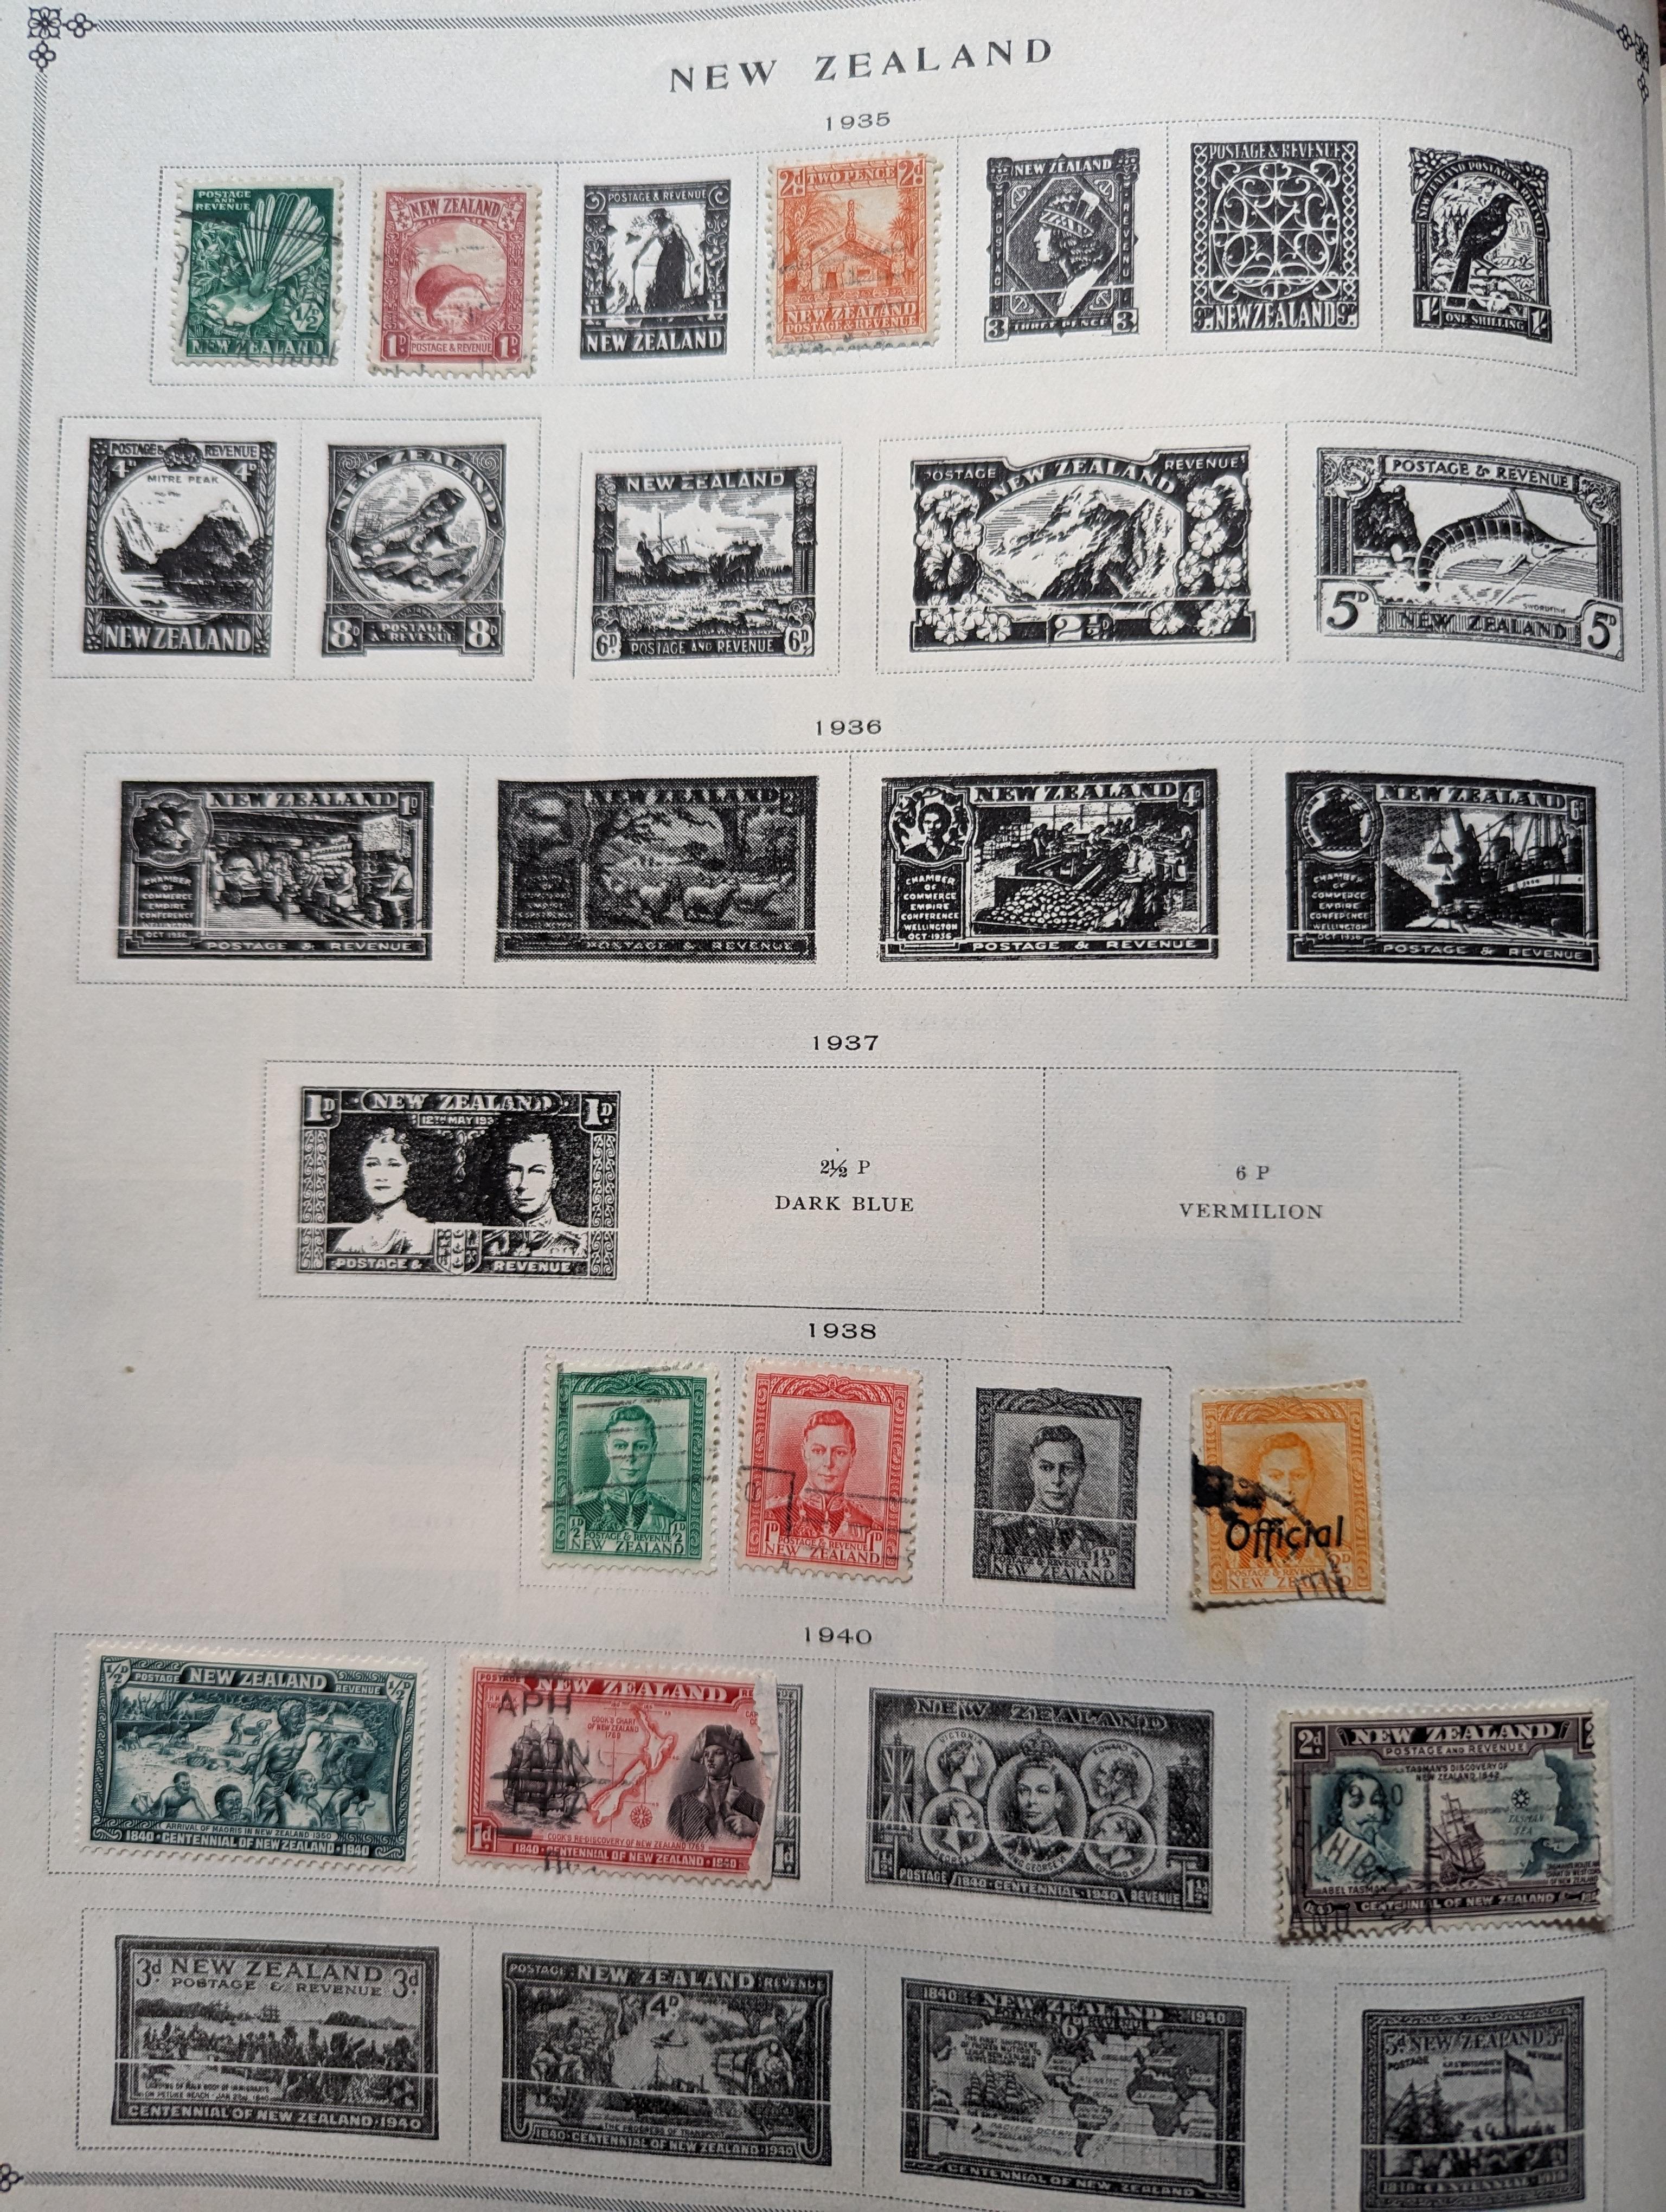 Vintage Scott International Postage Stamp Junior album